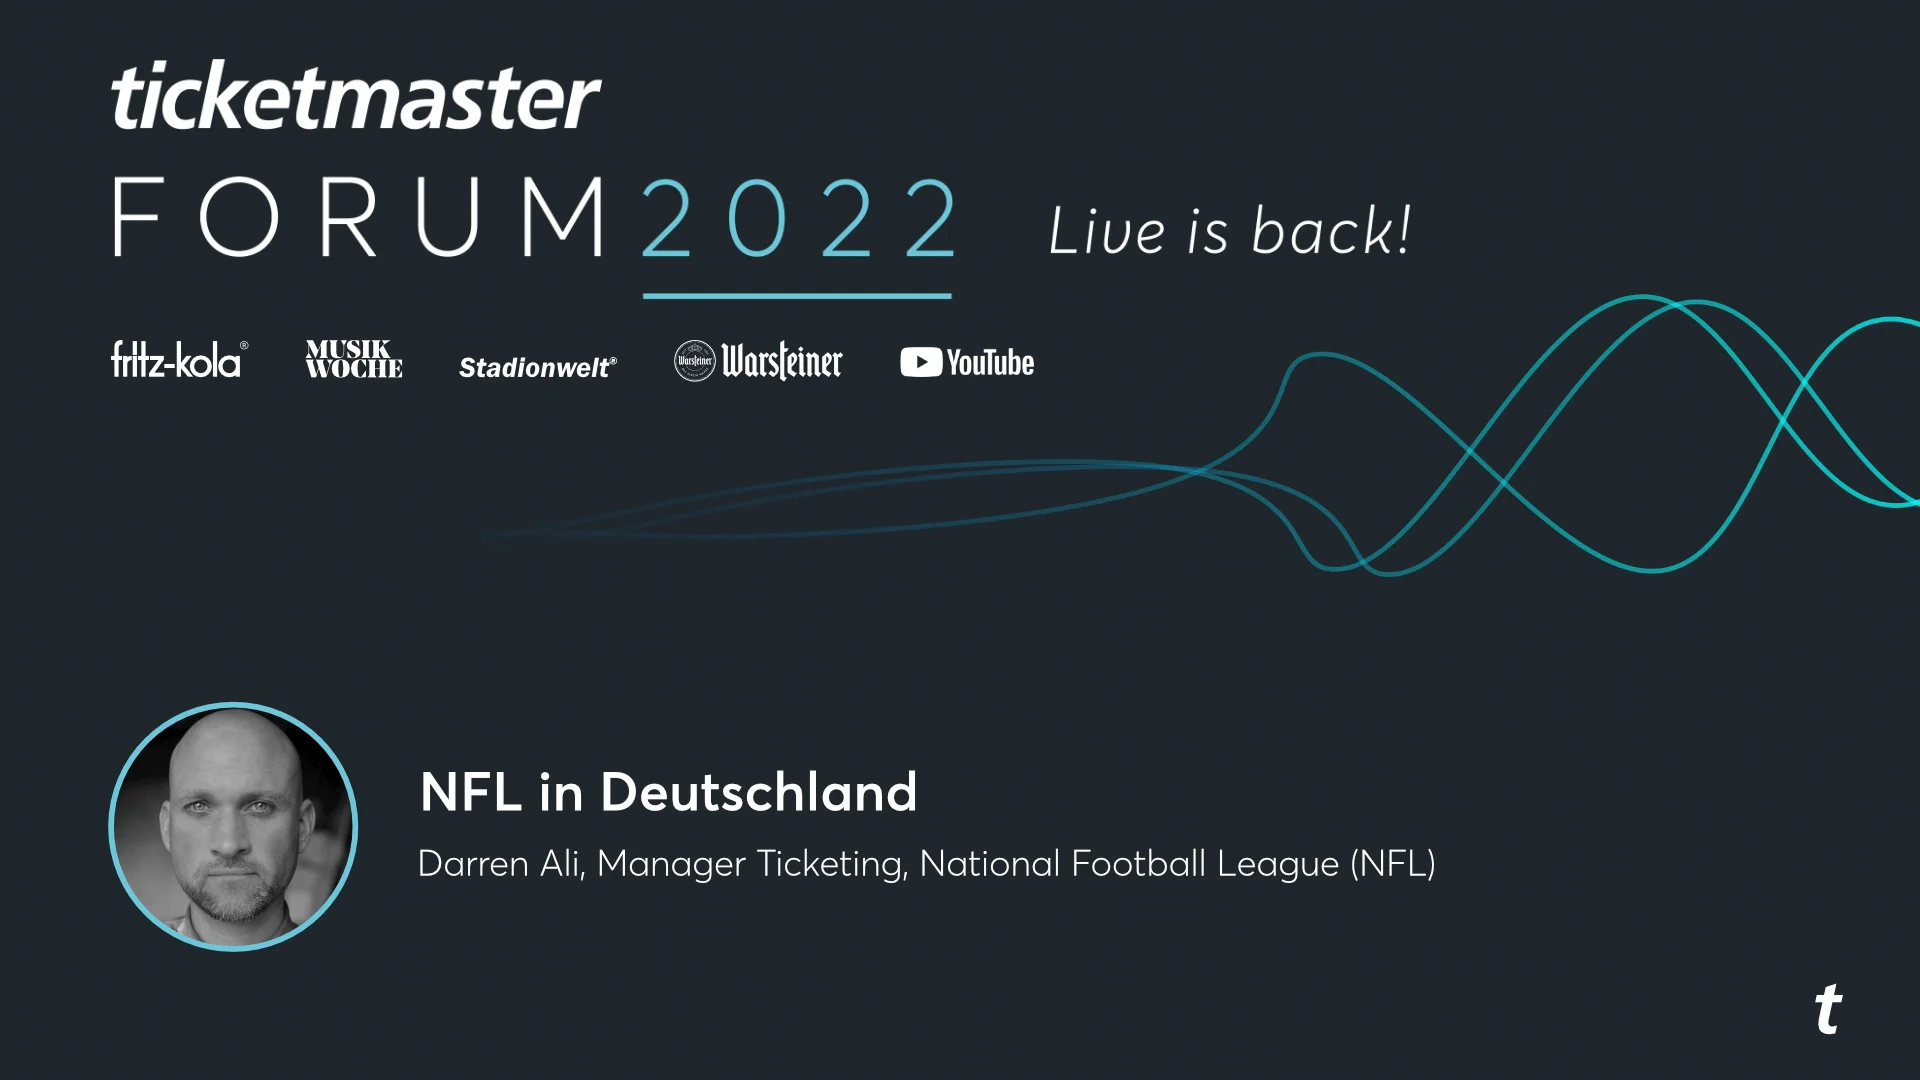 NFL in Deutschland - Darren Ali - Ticketmaster Forum 2022 on Vimeo